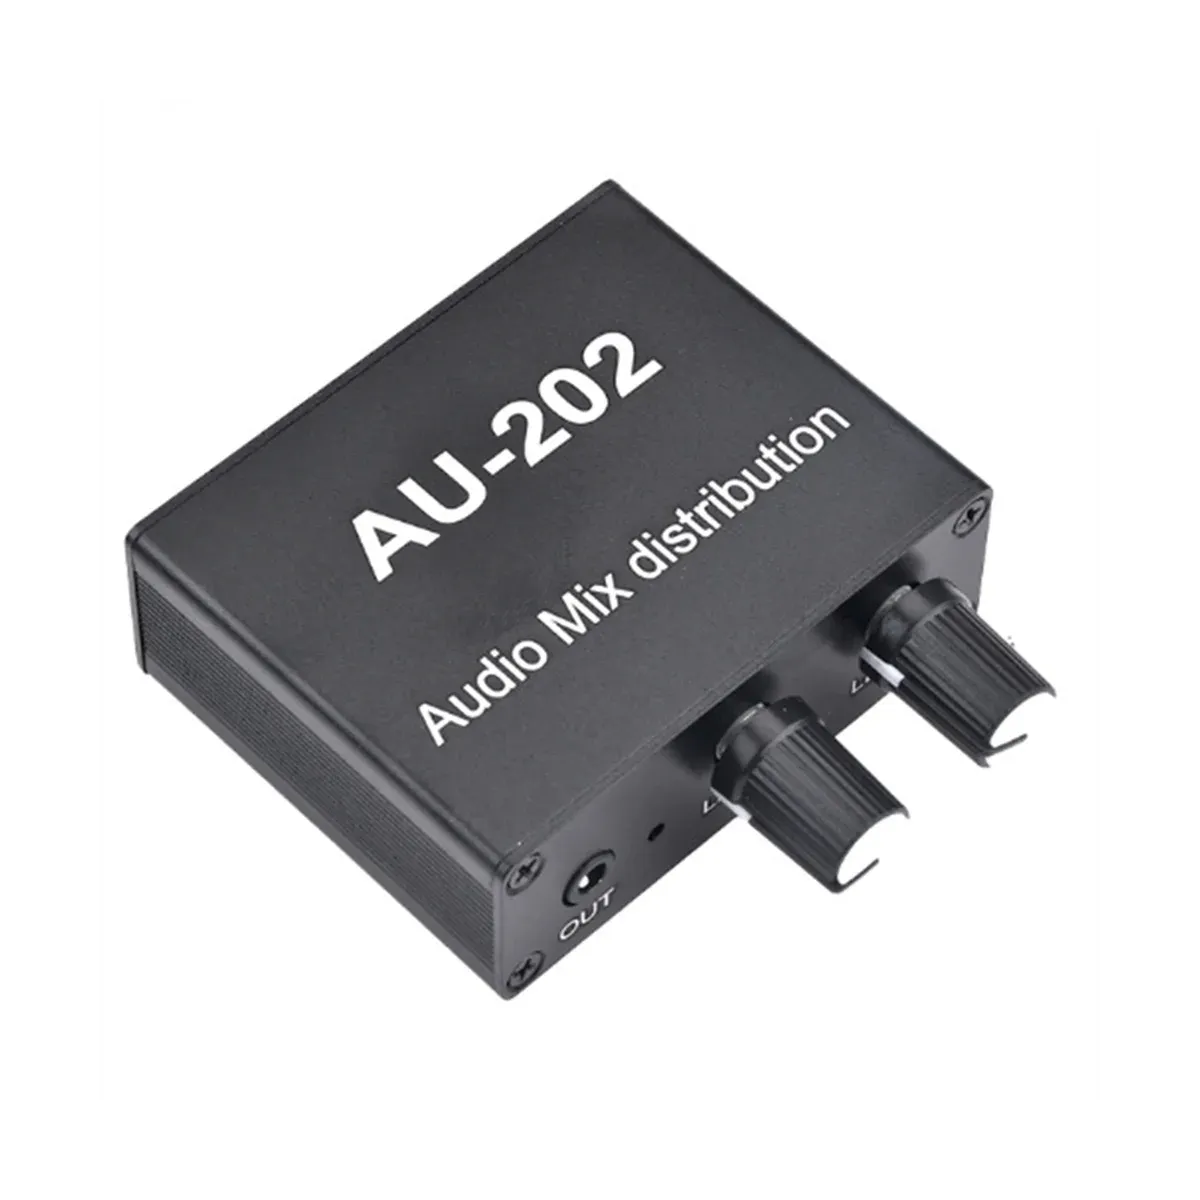 Wzmacniacz AU202 2 Wejście 2 wyjściowe Mikser stereo dystrybutor audio dla słuchawek zewnętrzny wzmacniacz mocy sama sterowanie